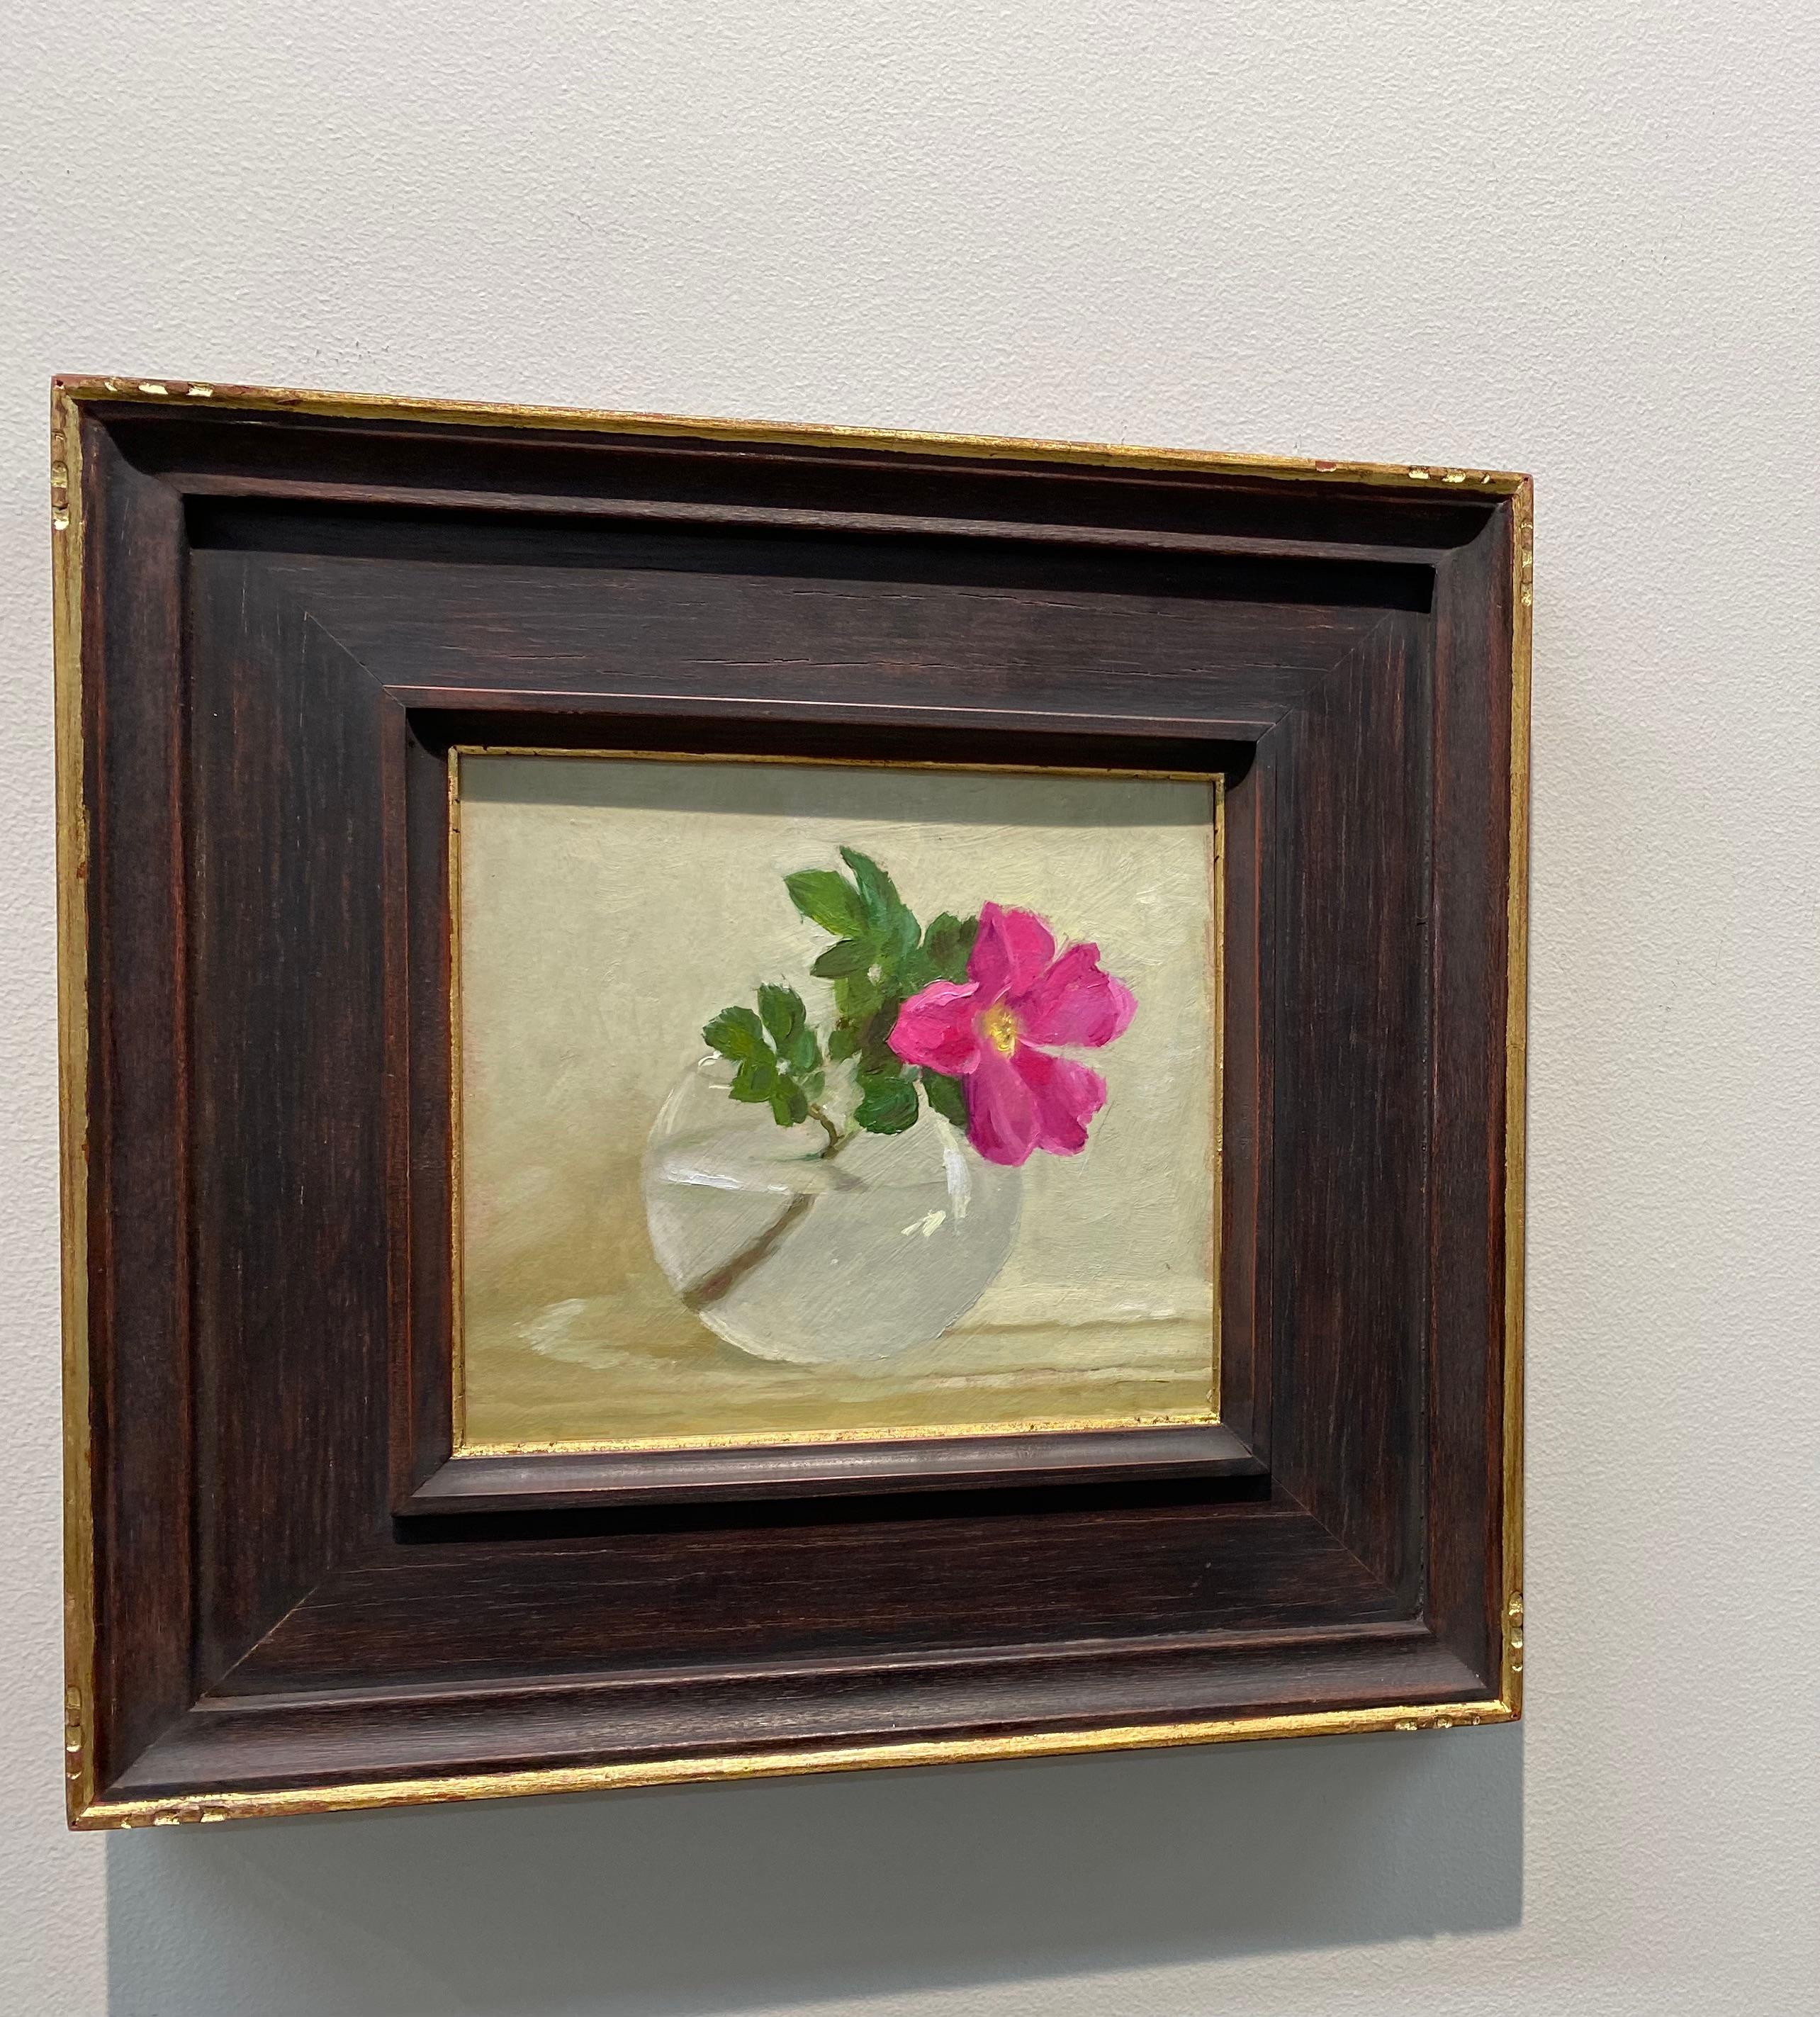 Rosehip-Stillleben aus dem 21. Jahrhundert, Gemälde einer Glasschale mit rosa Rosehips (Zeitgenössisch), Painting, von Ksenya Istomina